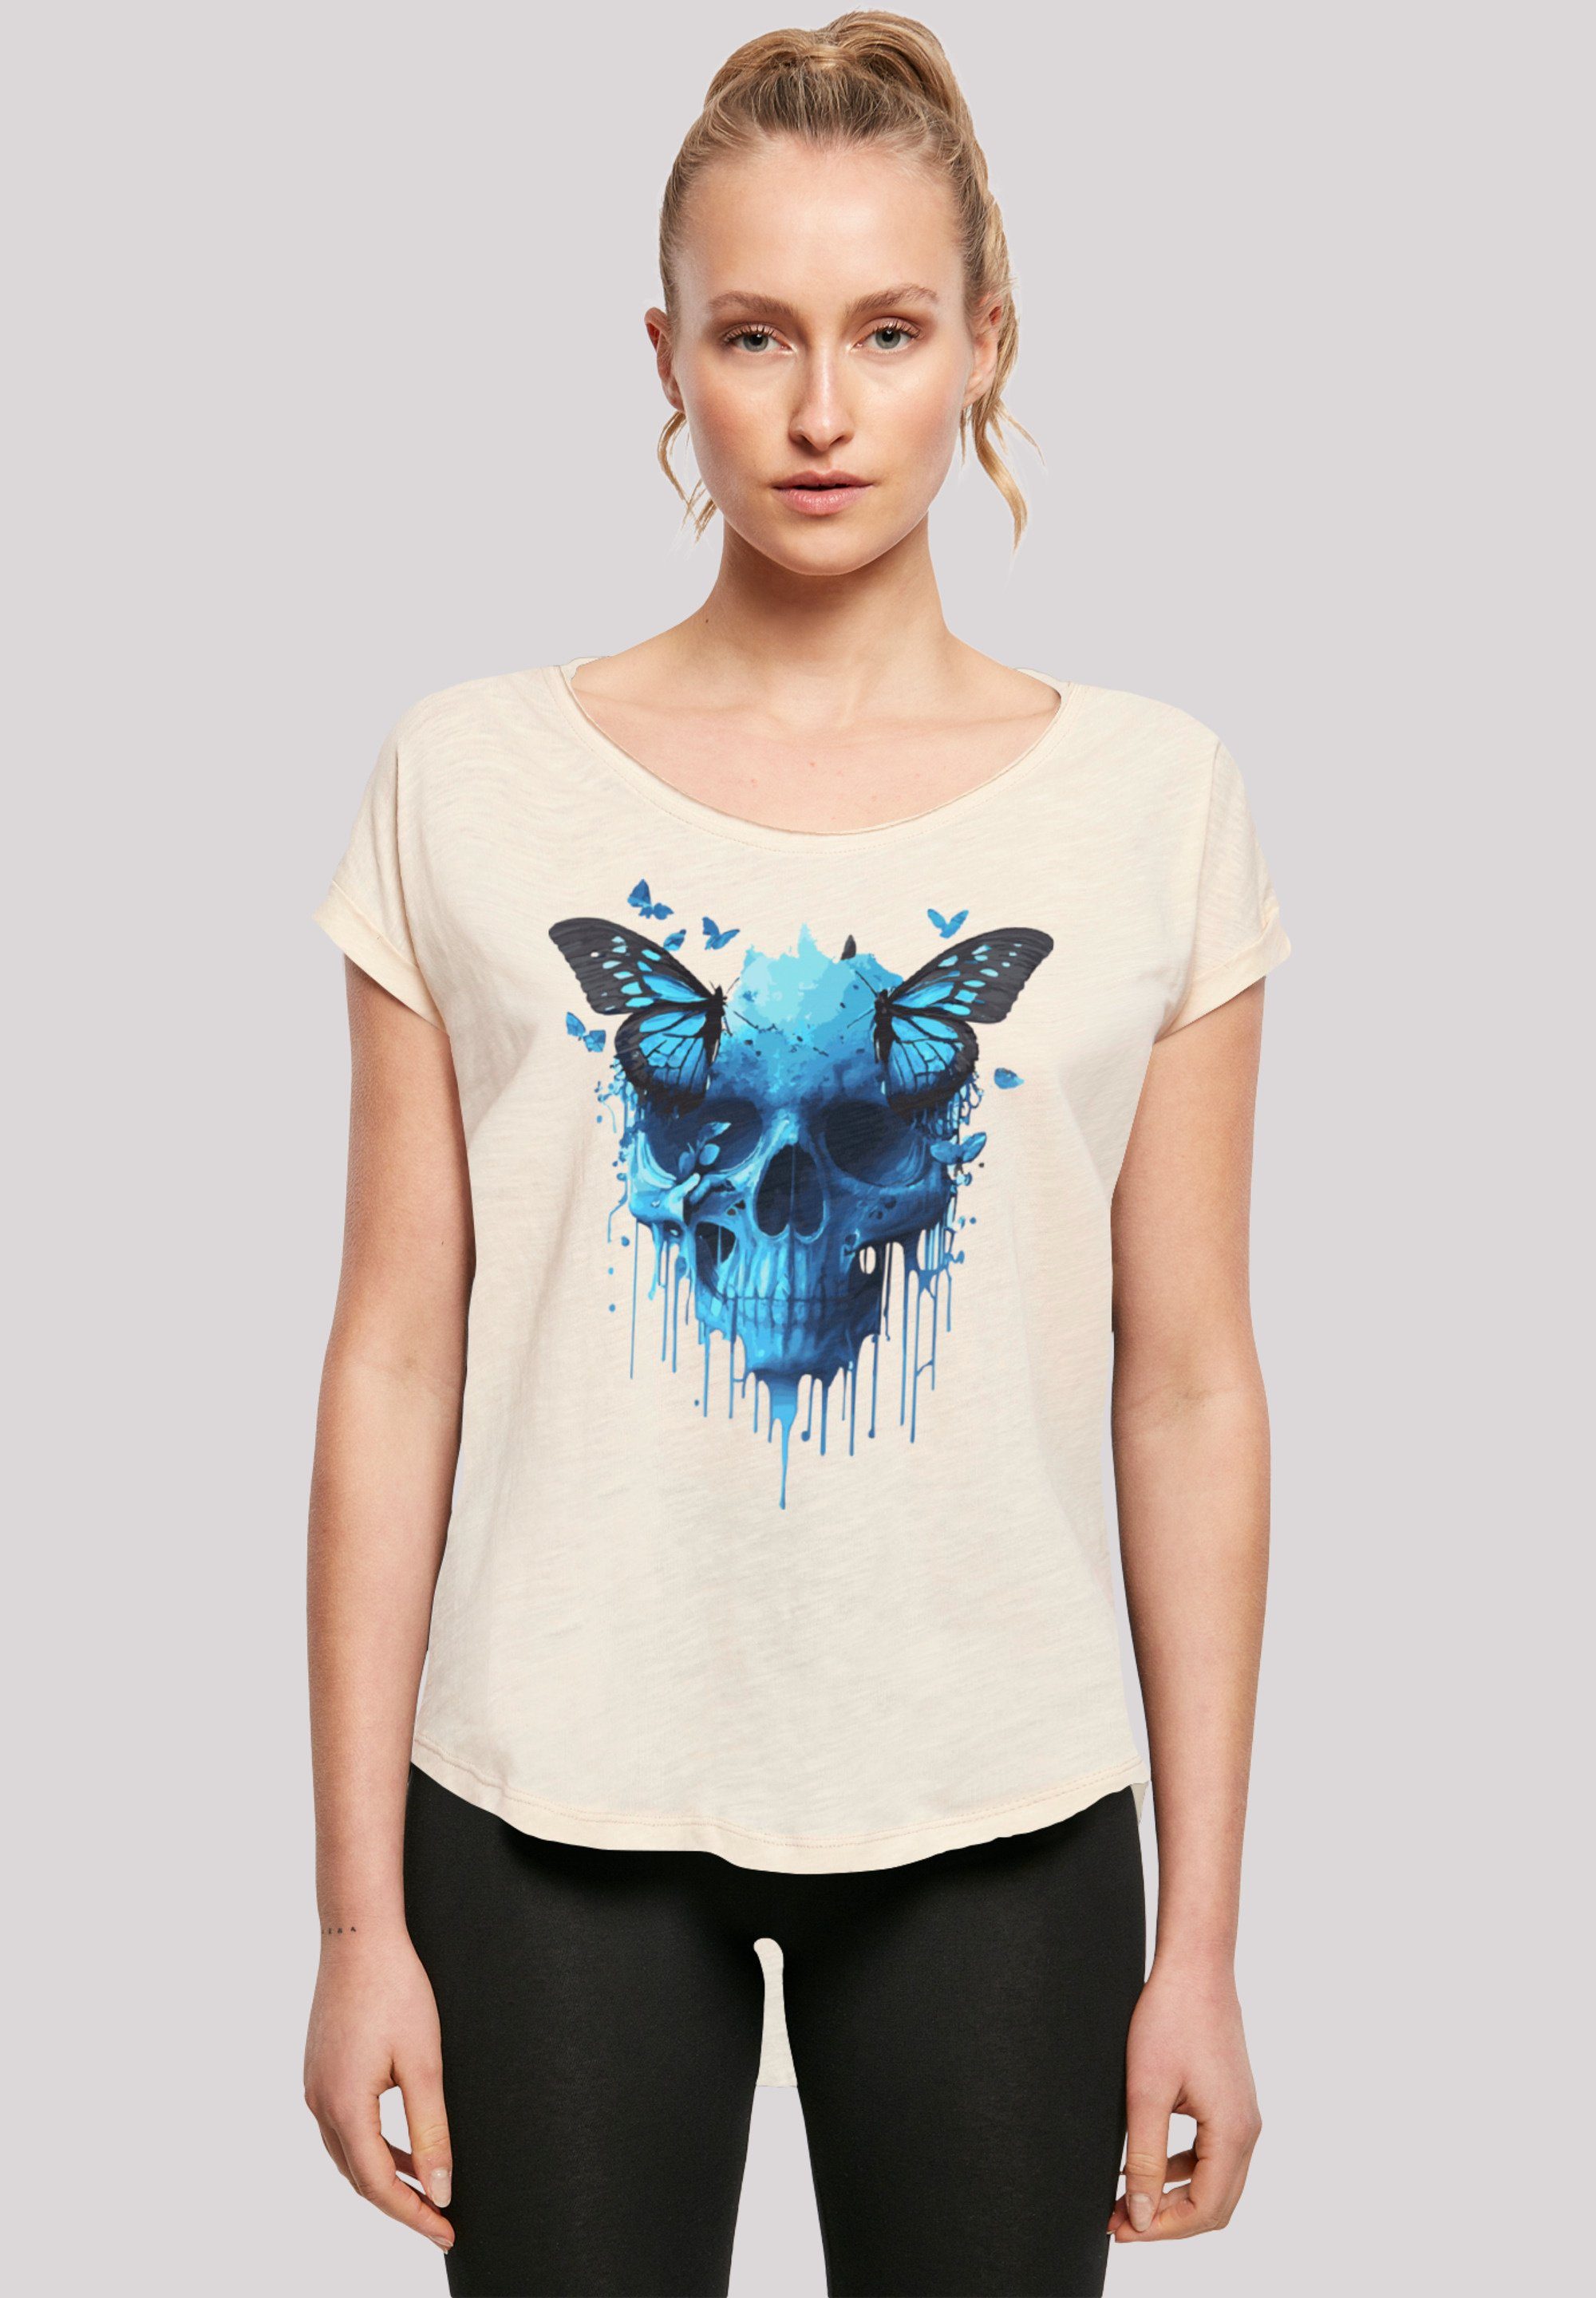 F4NT4STIC T-Shirt Totenkopf mit Schmetterling Print Whitesand